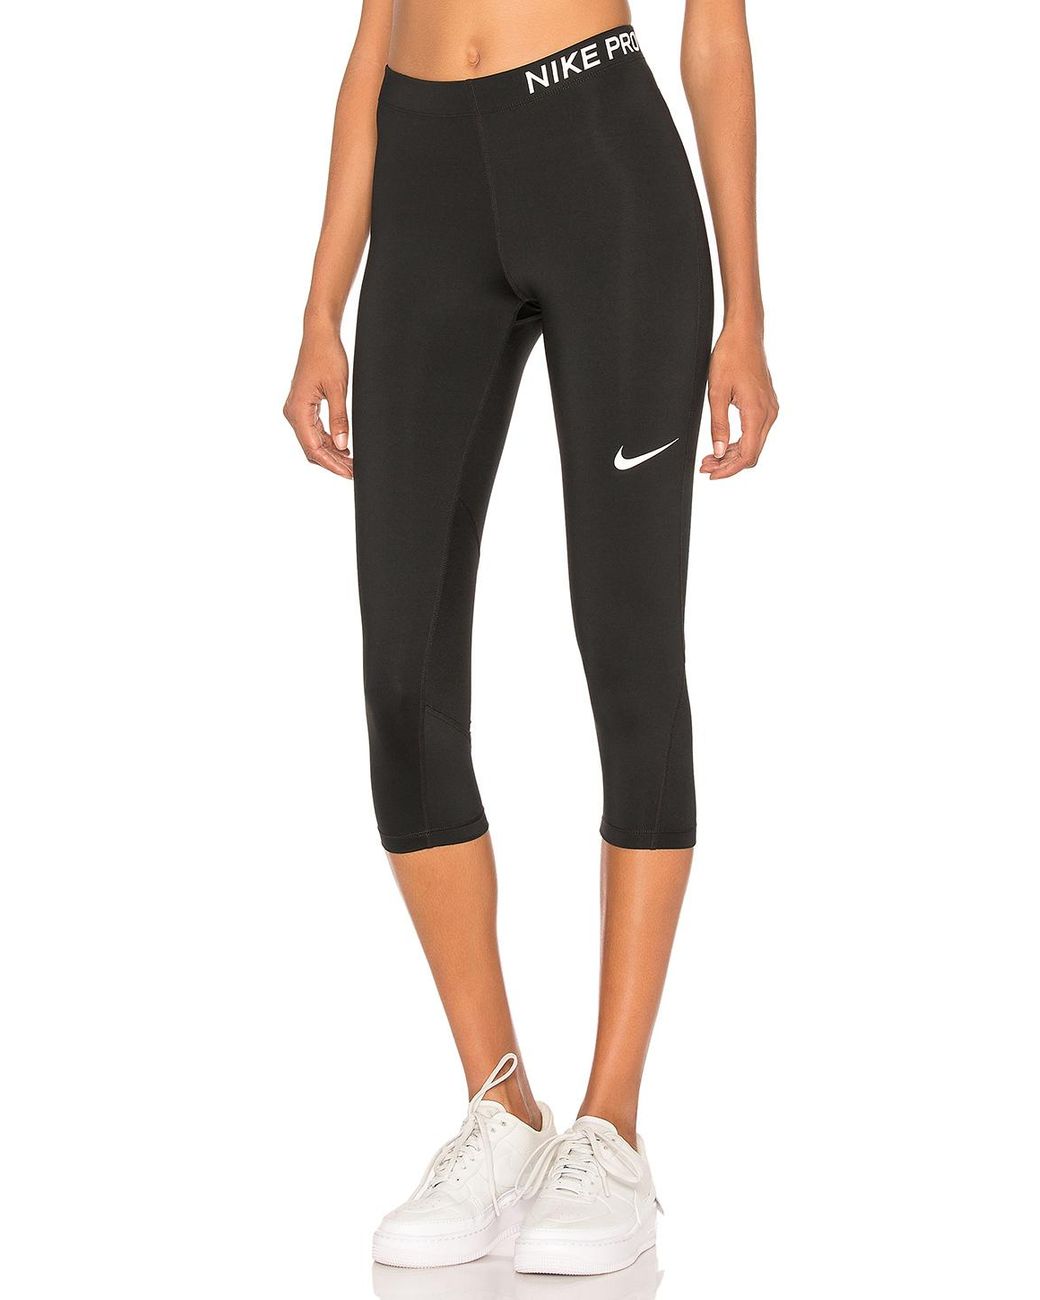 Nike Synthetic Pro Dri-fit Capri Training Leggings in Black & White ...